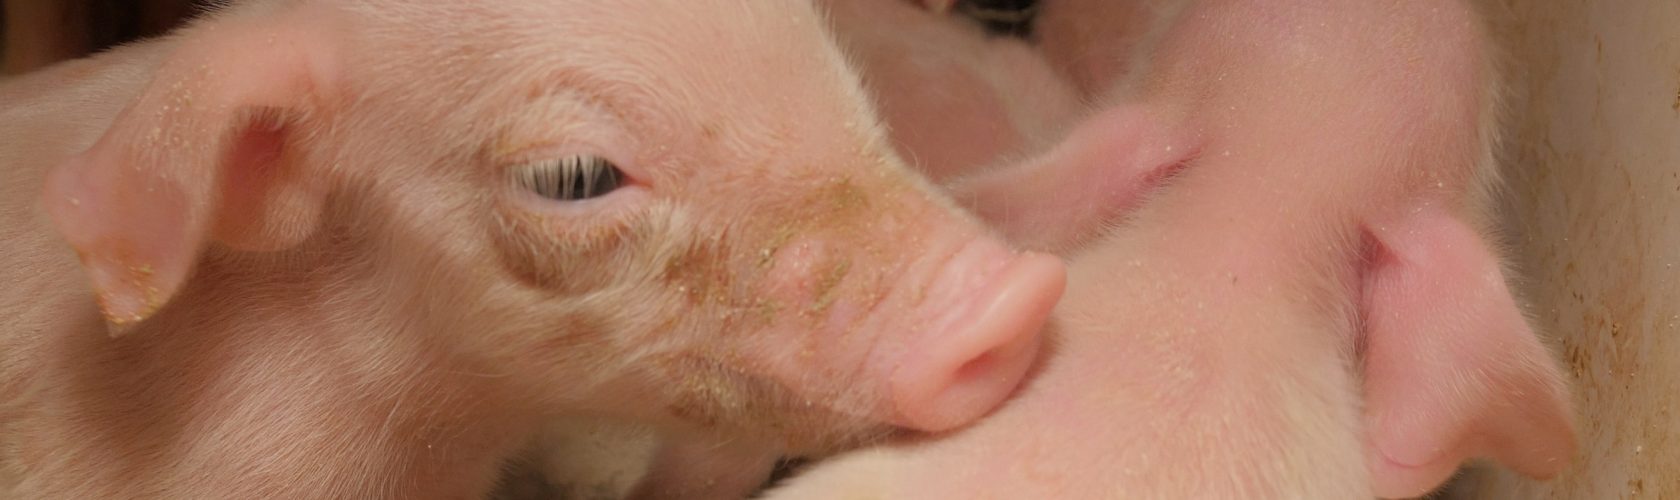 Beeld: close up van een jong varken